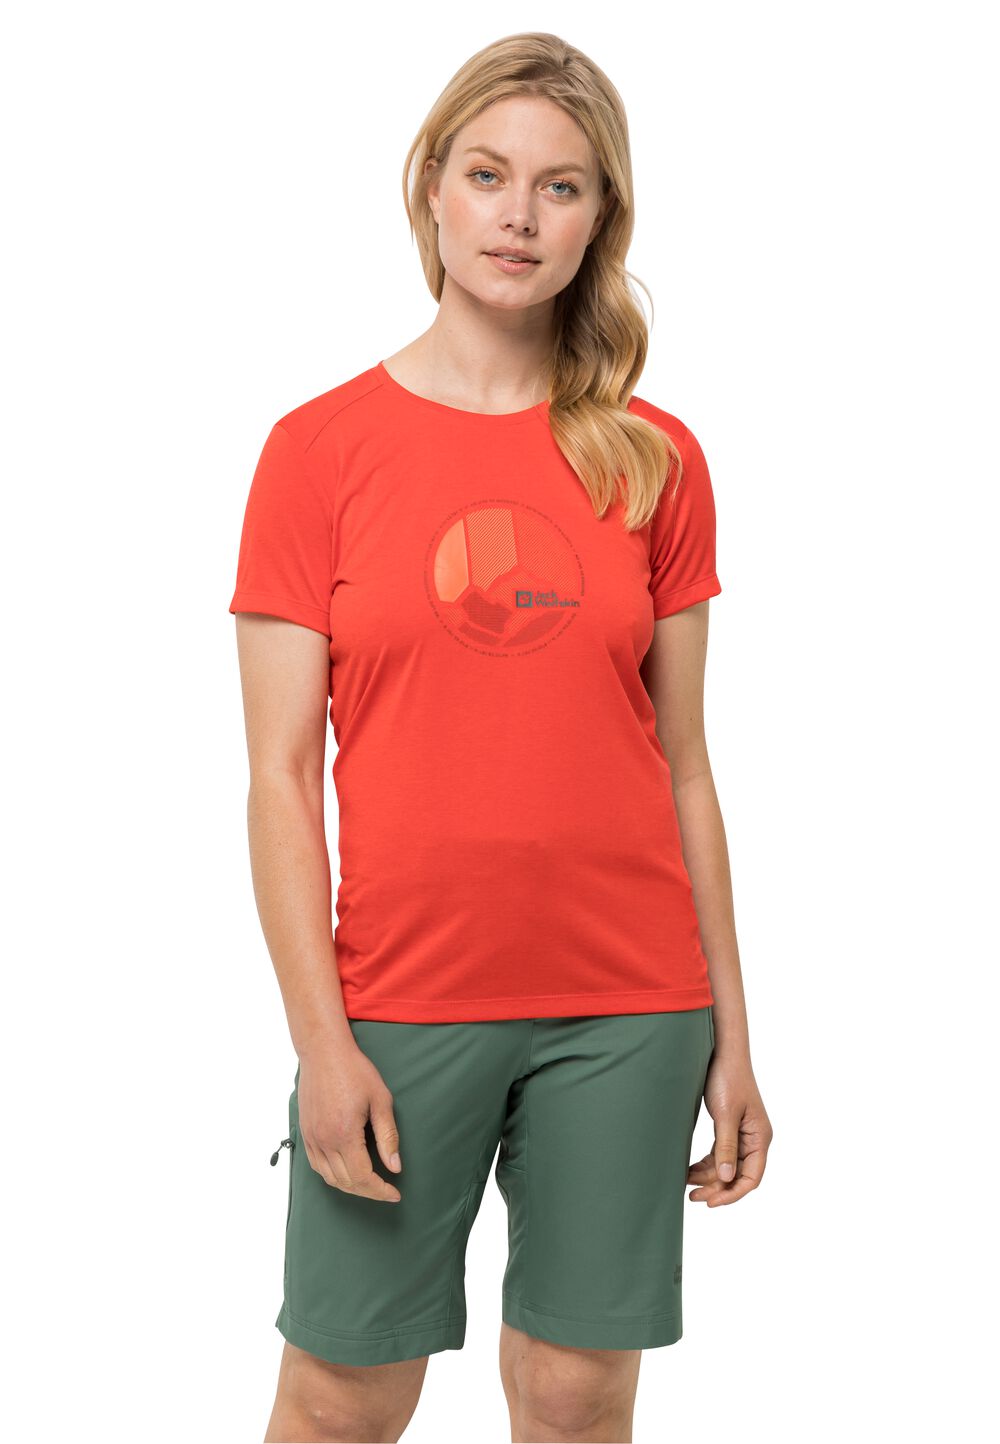 Jack Wolfskin Funktionsshirt Damen Crosstrail Graphic T-Shirt Women XS tango orange tango orange von Jack Wolfskin